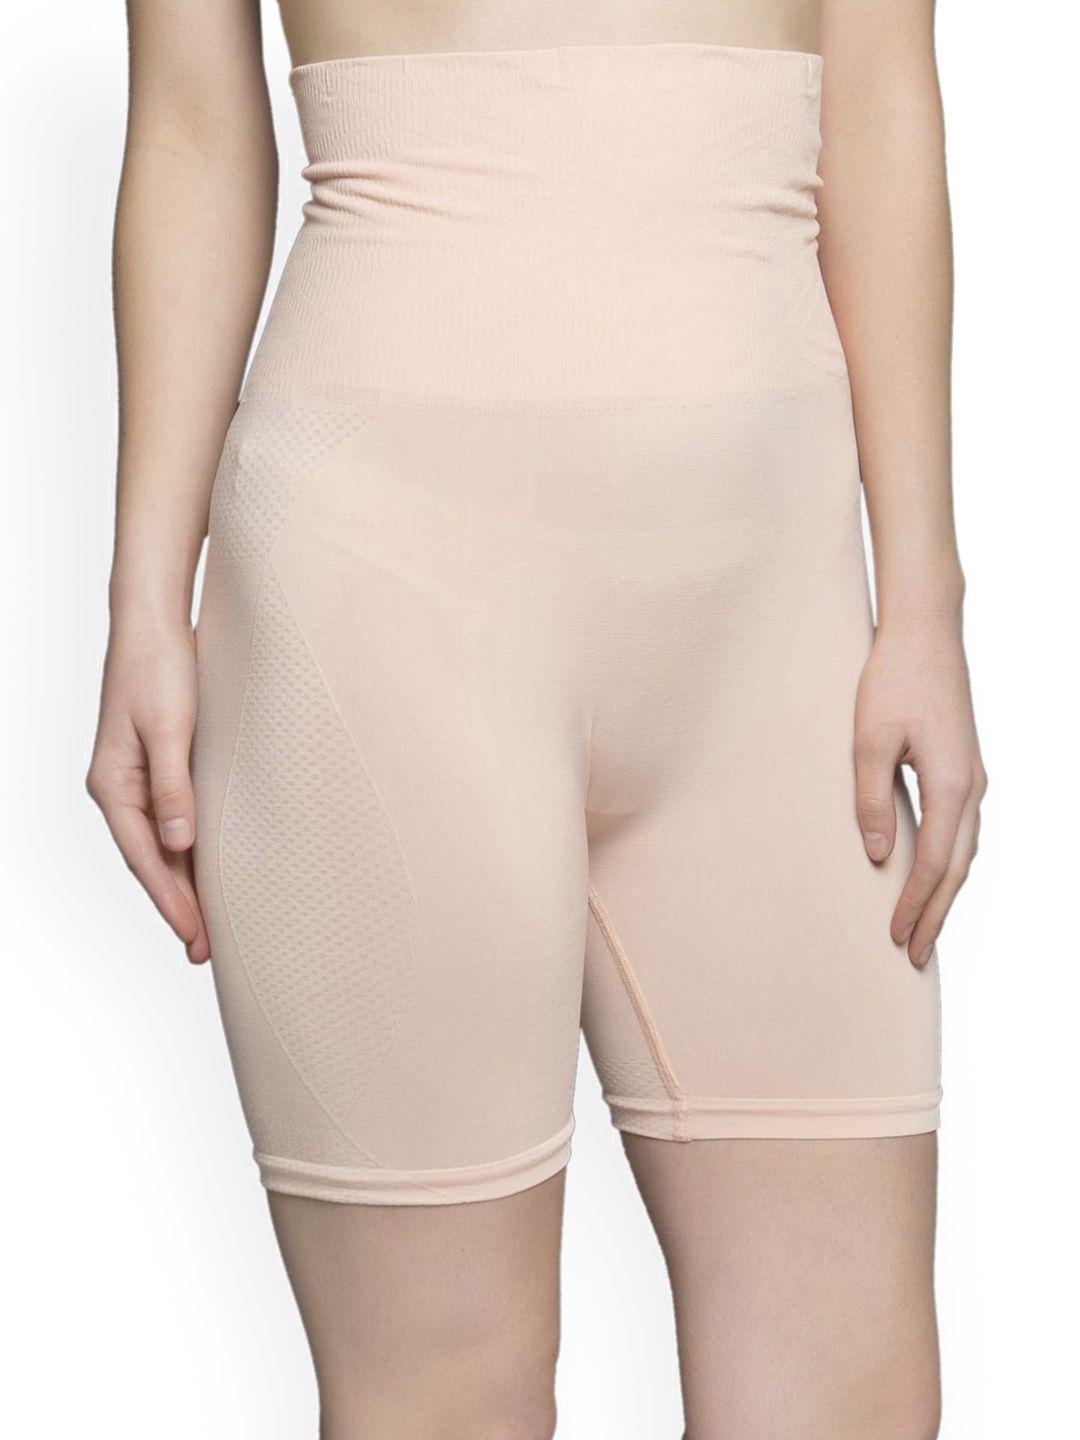 clovia nude hip & thigh cover shapewear sw0007j49s